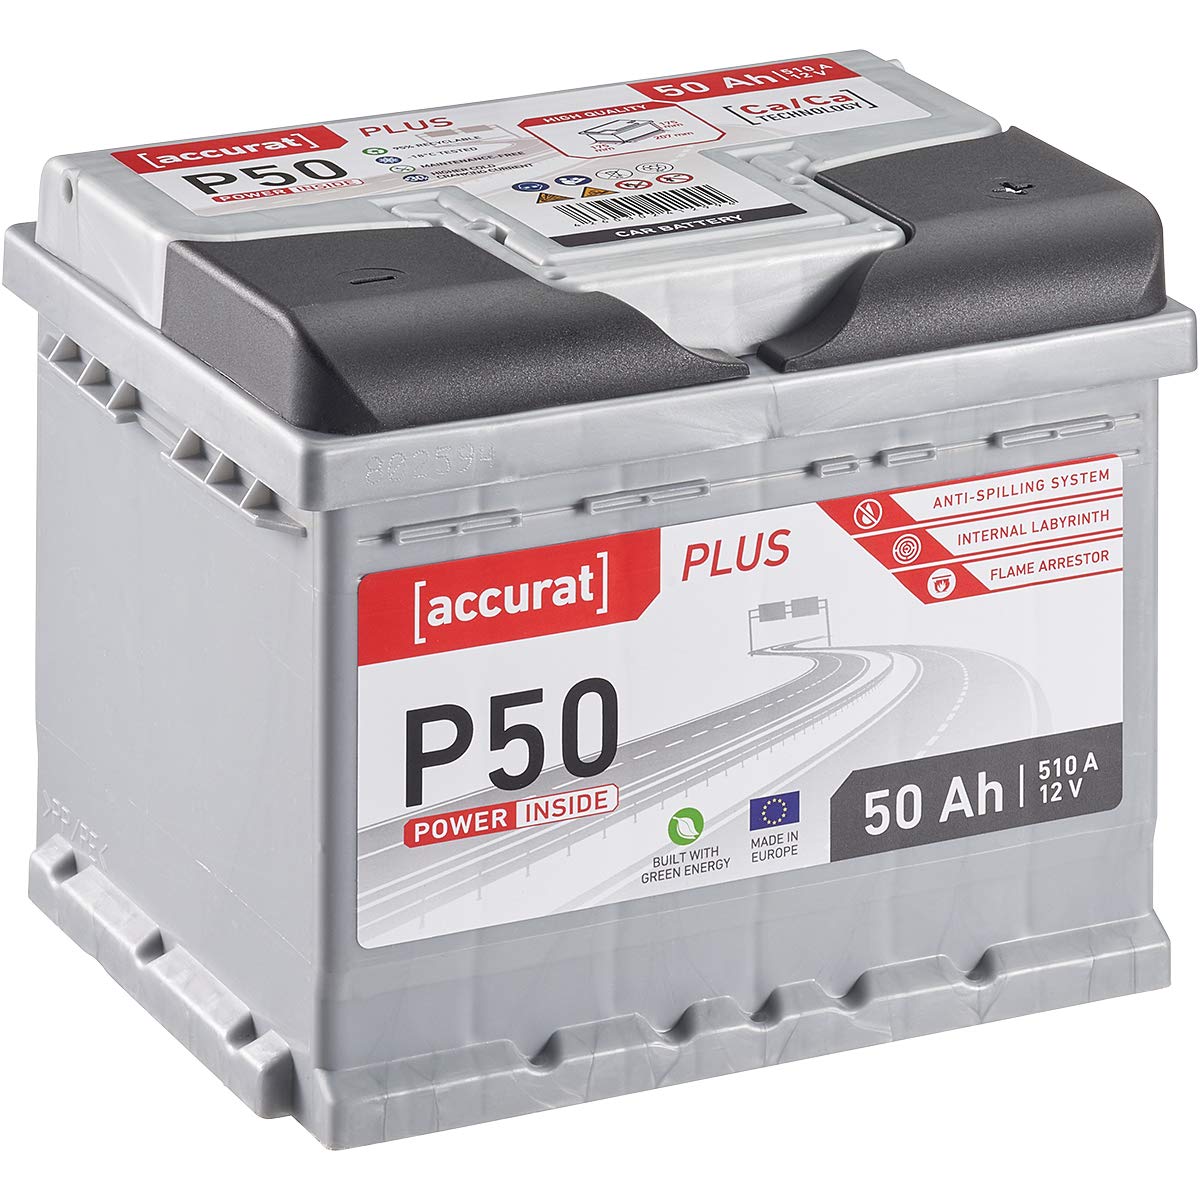 Accurat Plus P50 Autobatterie - 12V, 50Ah, 510A, zyklenfest, wartungsfrei, 35% mehr Startleistung, Ca-Technologie, Kaltstartkraft - Starterbatterie, Nassbatterie, Blei-Säure Batterie